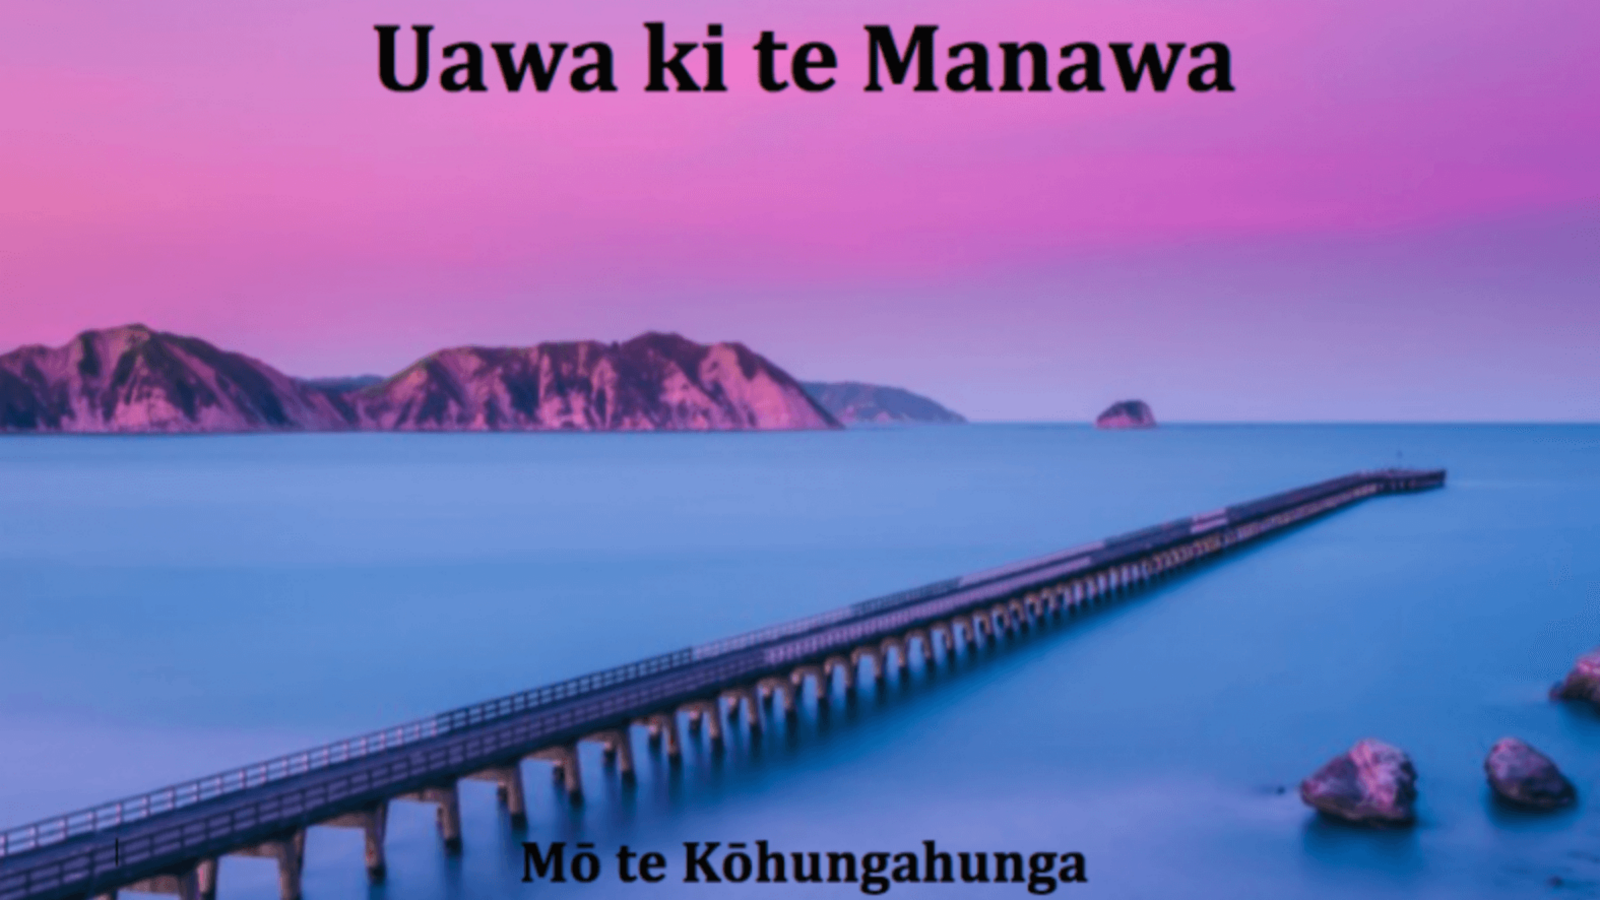 An image of a long jetty reaching out into a calm sea beneath a light purple sky, text on the image reads, Uawa ki te Manawa, Mō te Kōhungahunga..